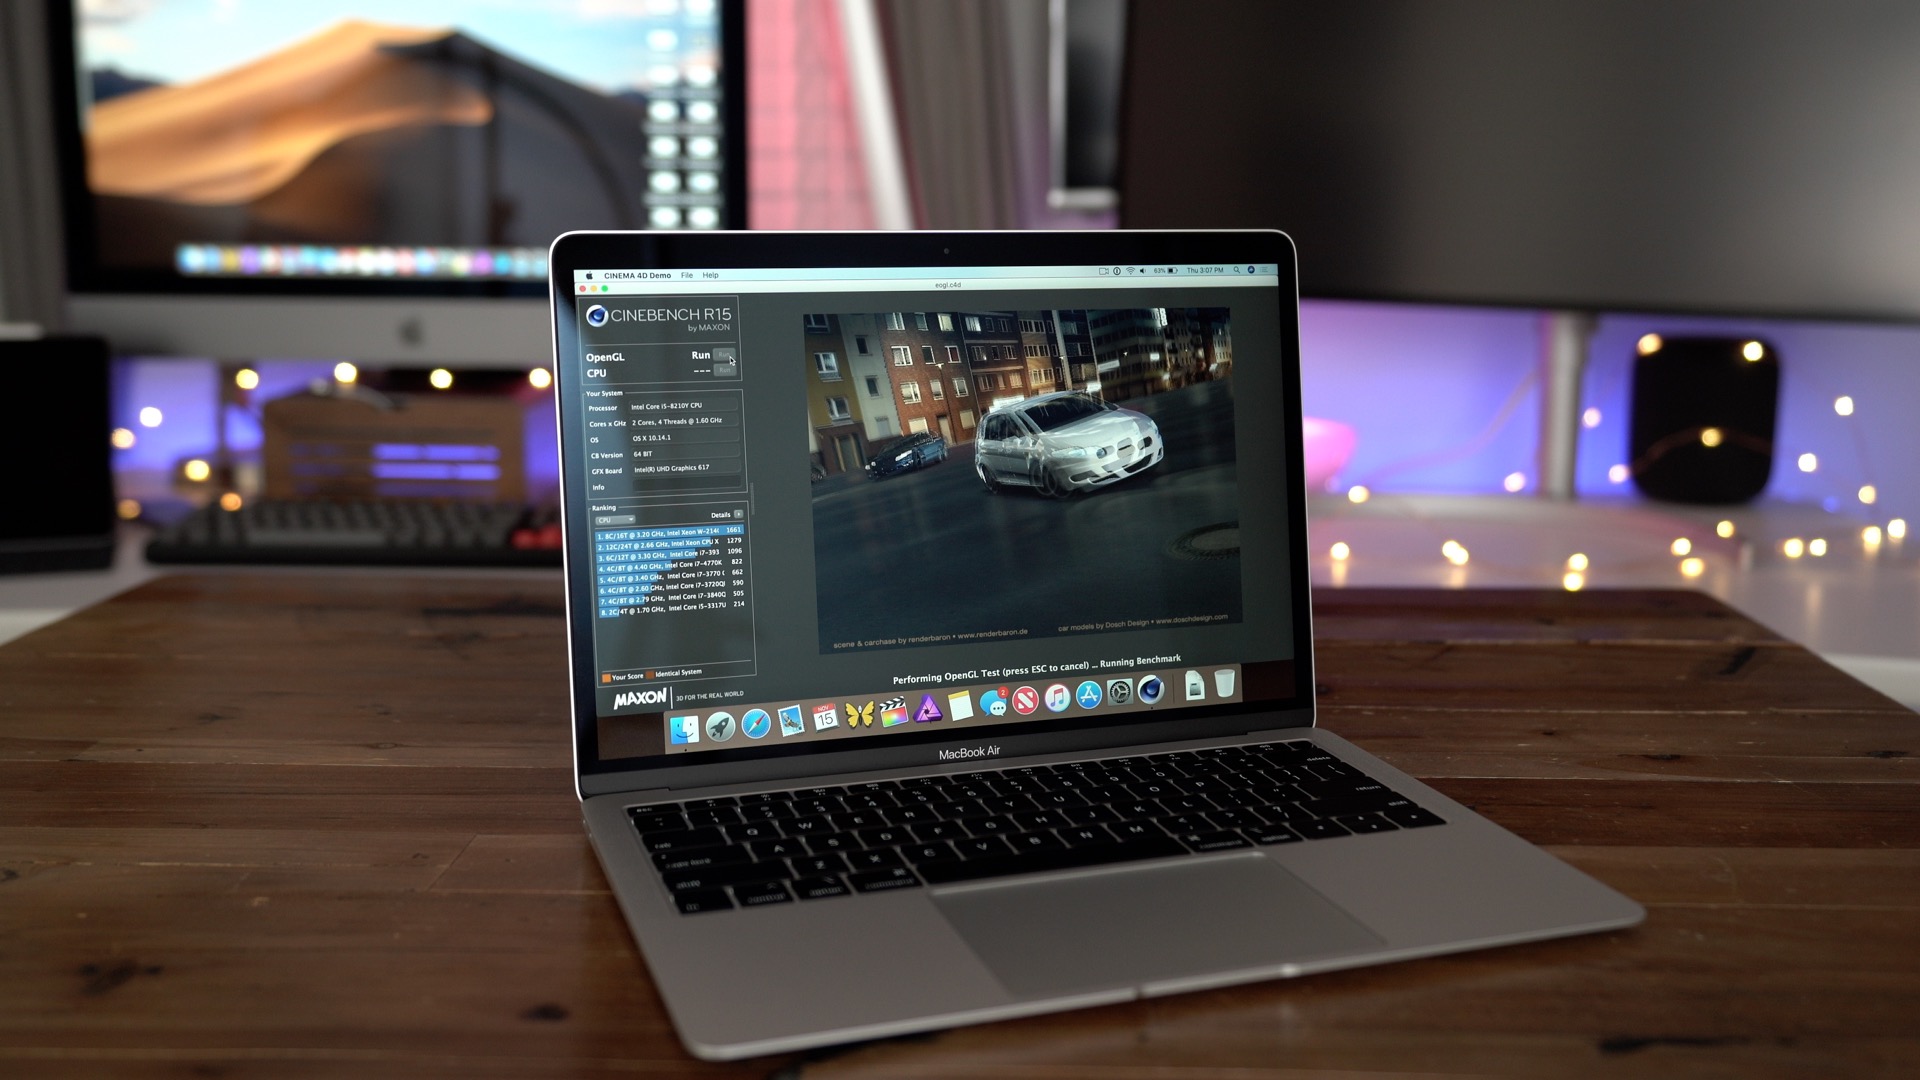 macbook air for video editing 2018